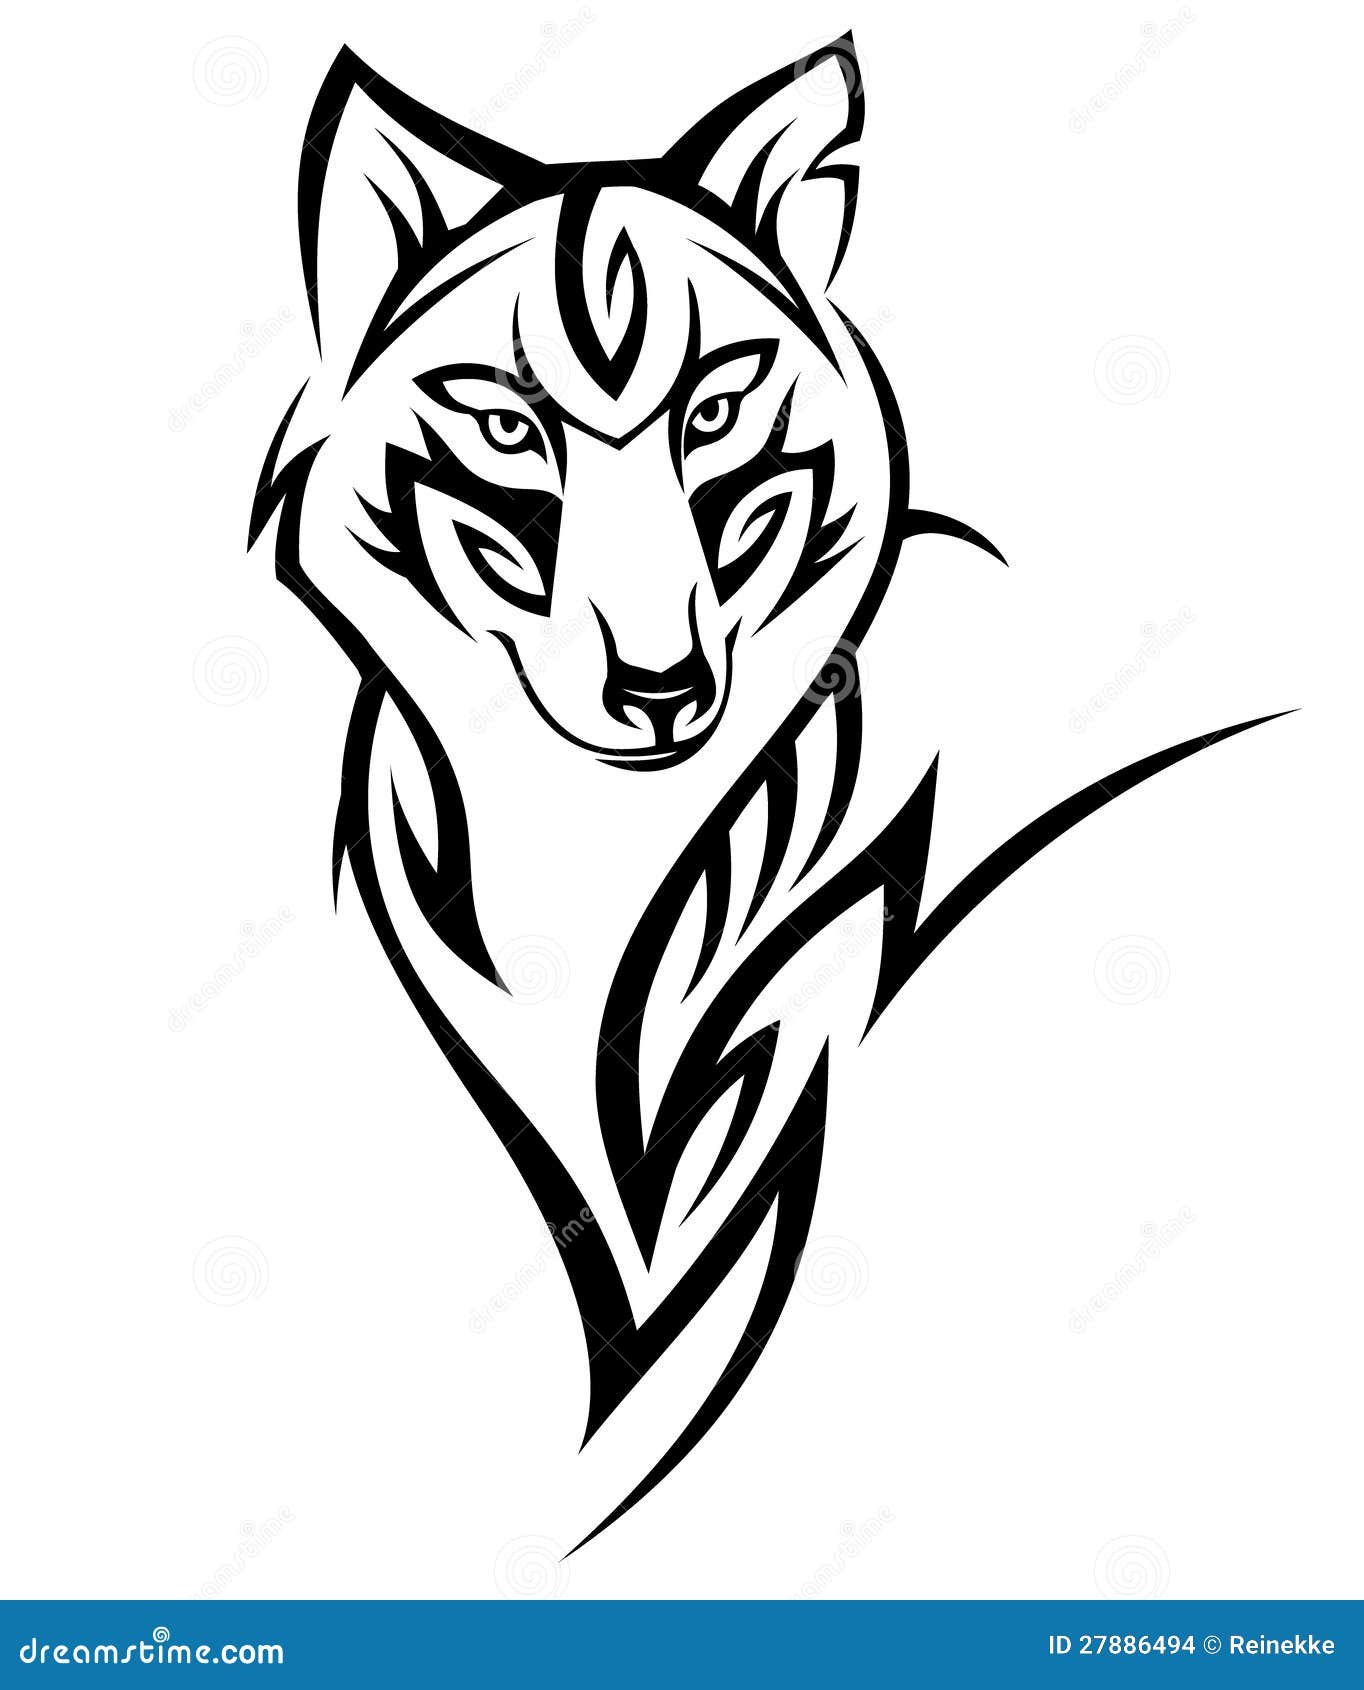 Tribal Wolf Tattoo Stock Illustrations – 2,451 Tribal Wolf Tattoo Stock Illustrations, Vectors & Clipart - Dreamstime